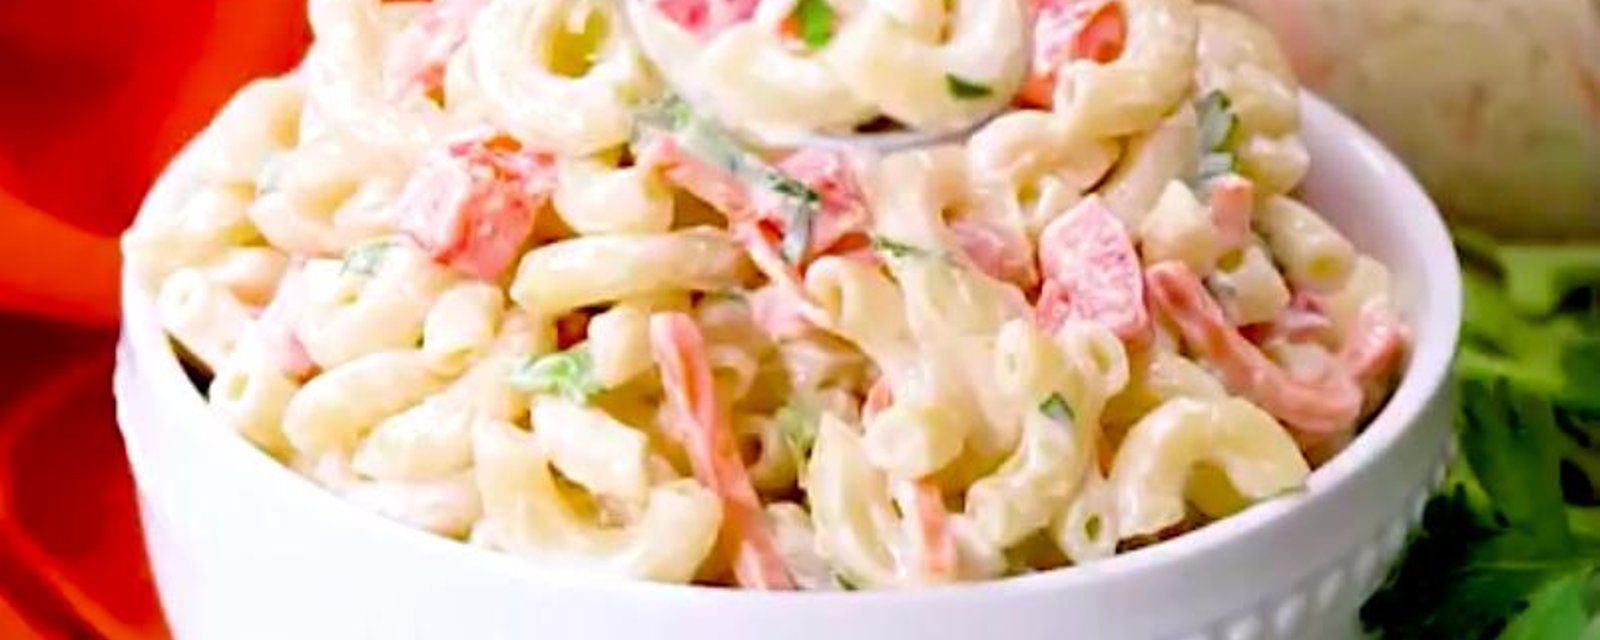 La meilleure recette de salade froide au macaroni que vous aurez mangée!